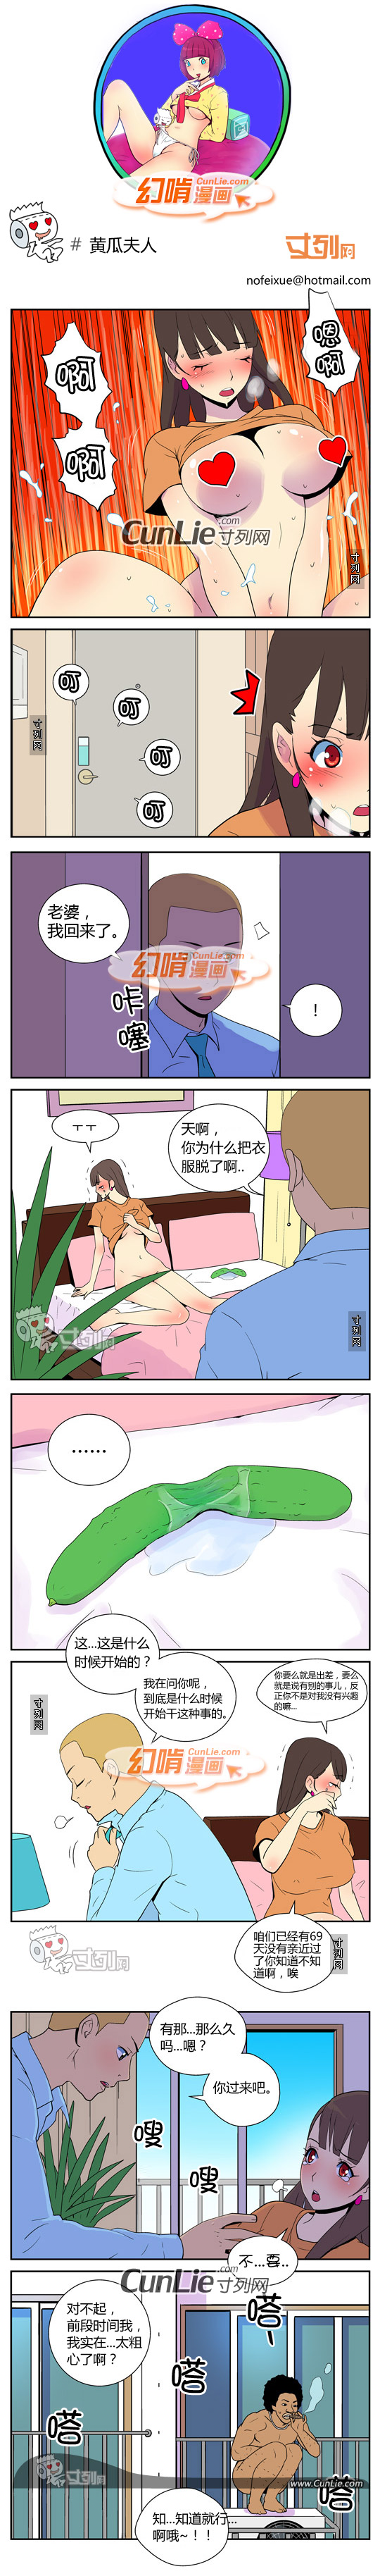 幻啃漫画黄瓜夫人